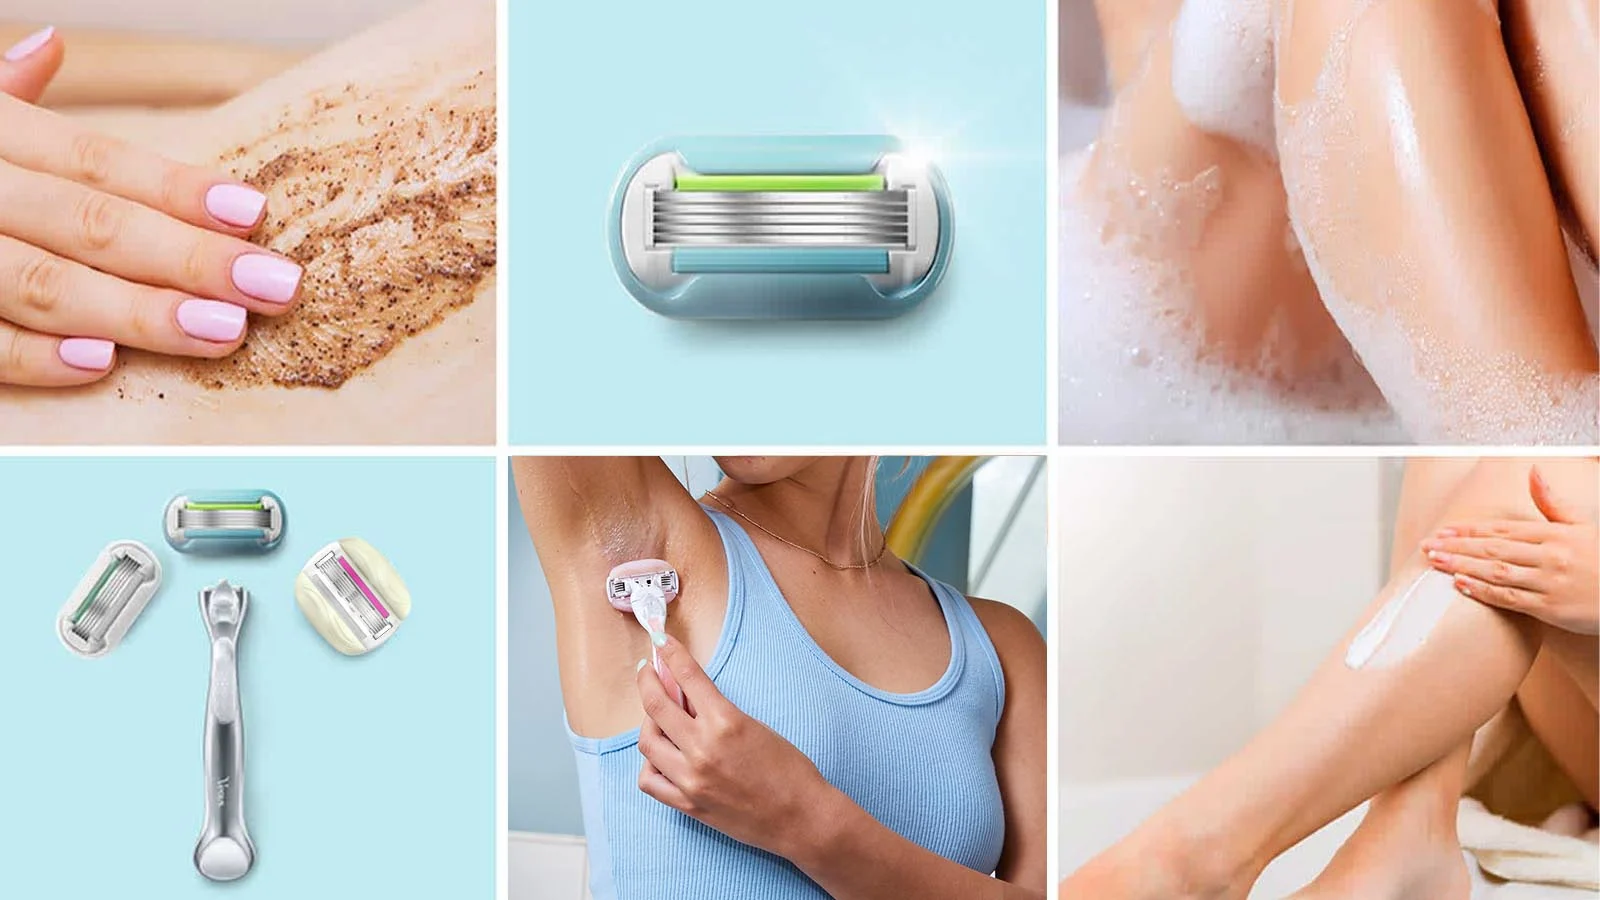 Un collage de diferentes imágenes que contienen temas de afeitado, baño y maquinilla de afeitar.